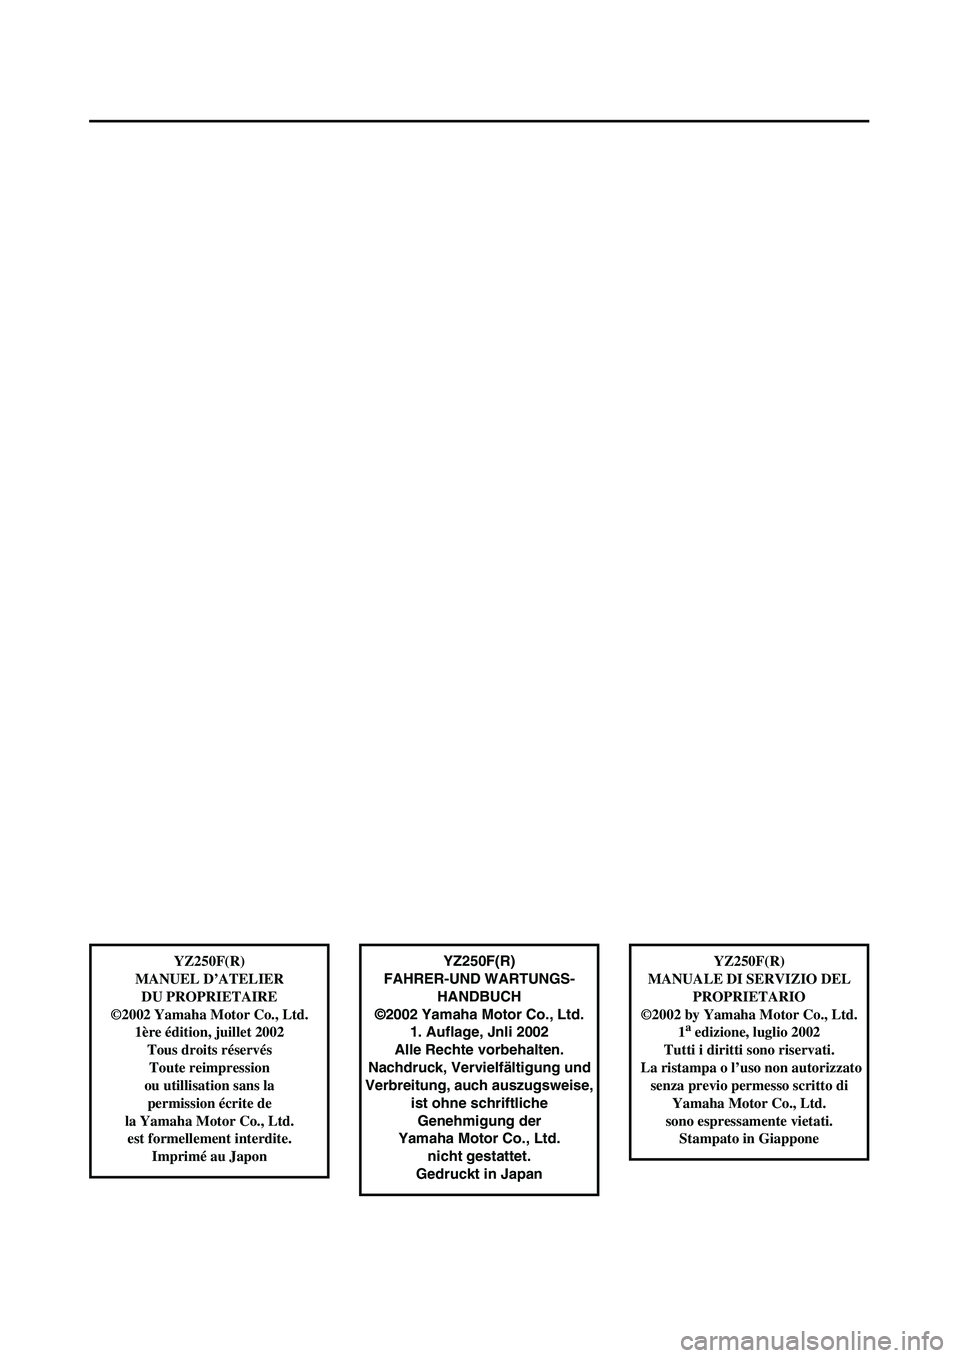 YAMAHA YZ250F 2003  Owners Manual  
YZ250F(R)
FAHRER-UND WARTUNGS-
HANDBUCH
©2002 Yamaha Motor Co., Ltd.
1. Auflage, Jnli 2002
Alle Rechte vorbehalten.
Nachdruck, Vervielfältigung und
Verbreitung, auch auszugsweise, 
ist ohne schrif